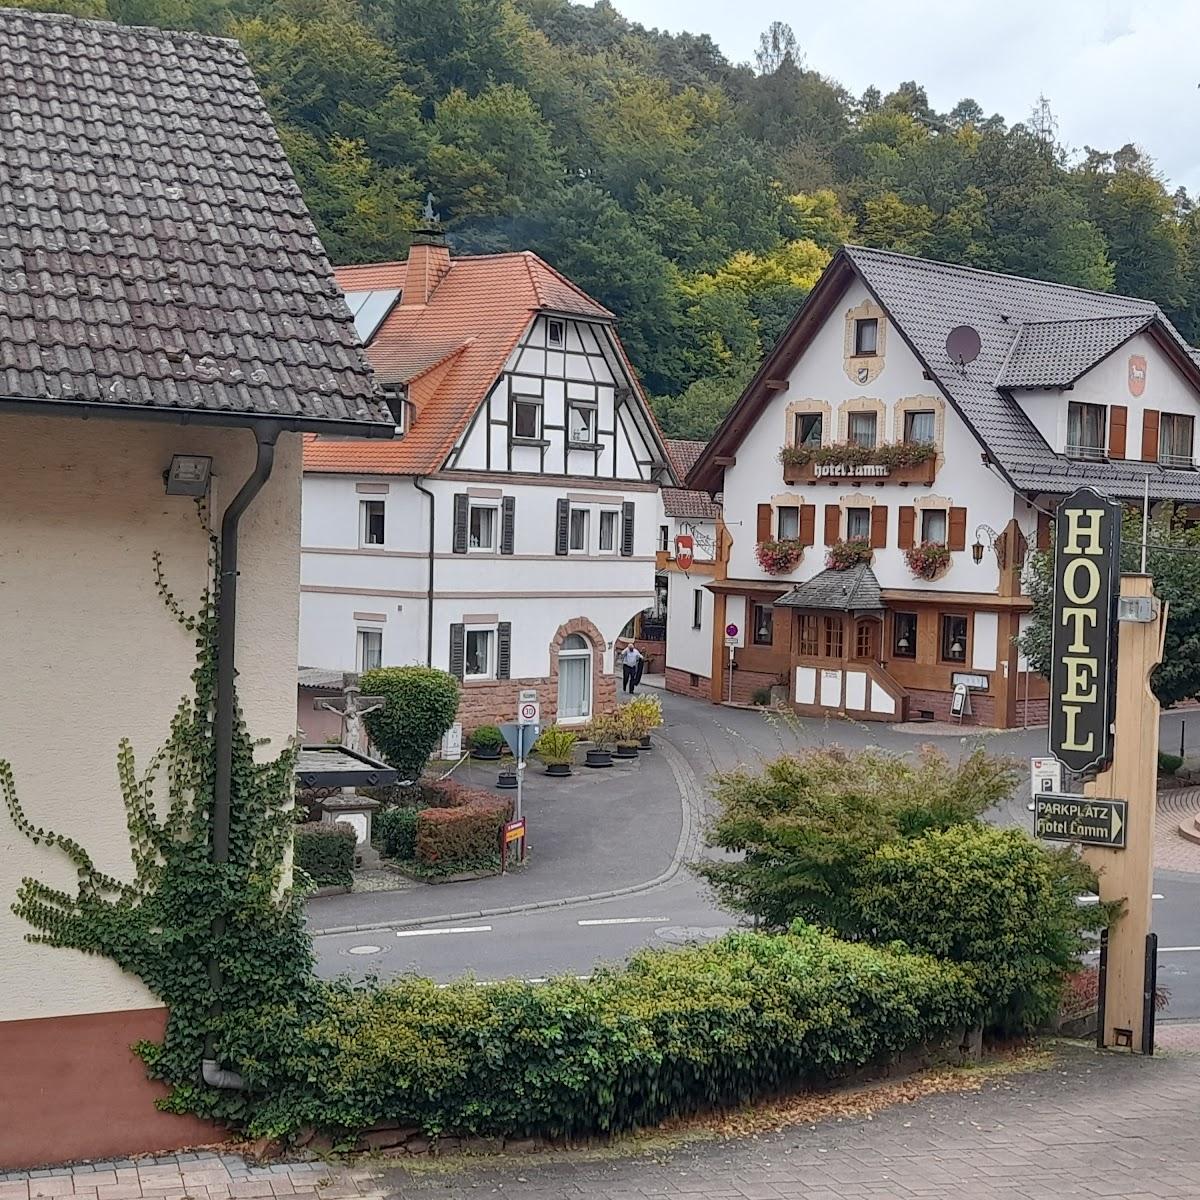 Restaurant "Birkenhof - Hotel Lamm" in Heimbuchenthal